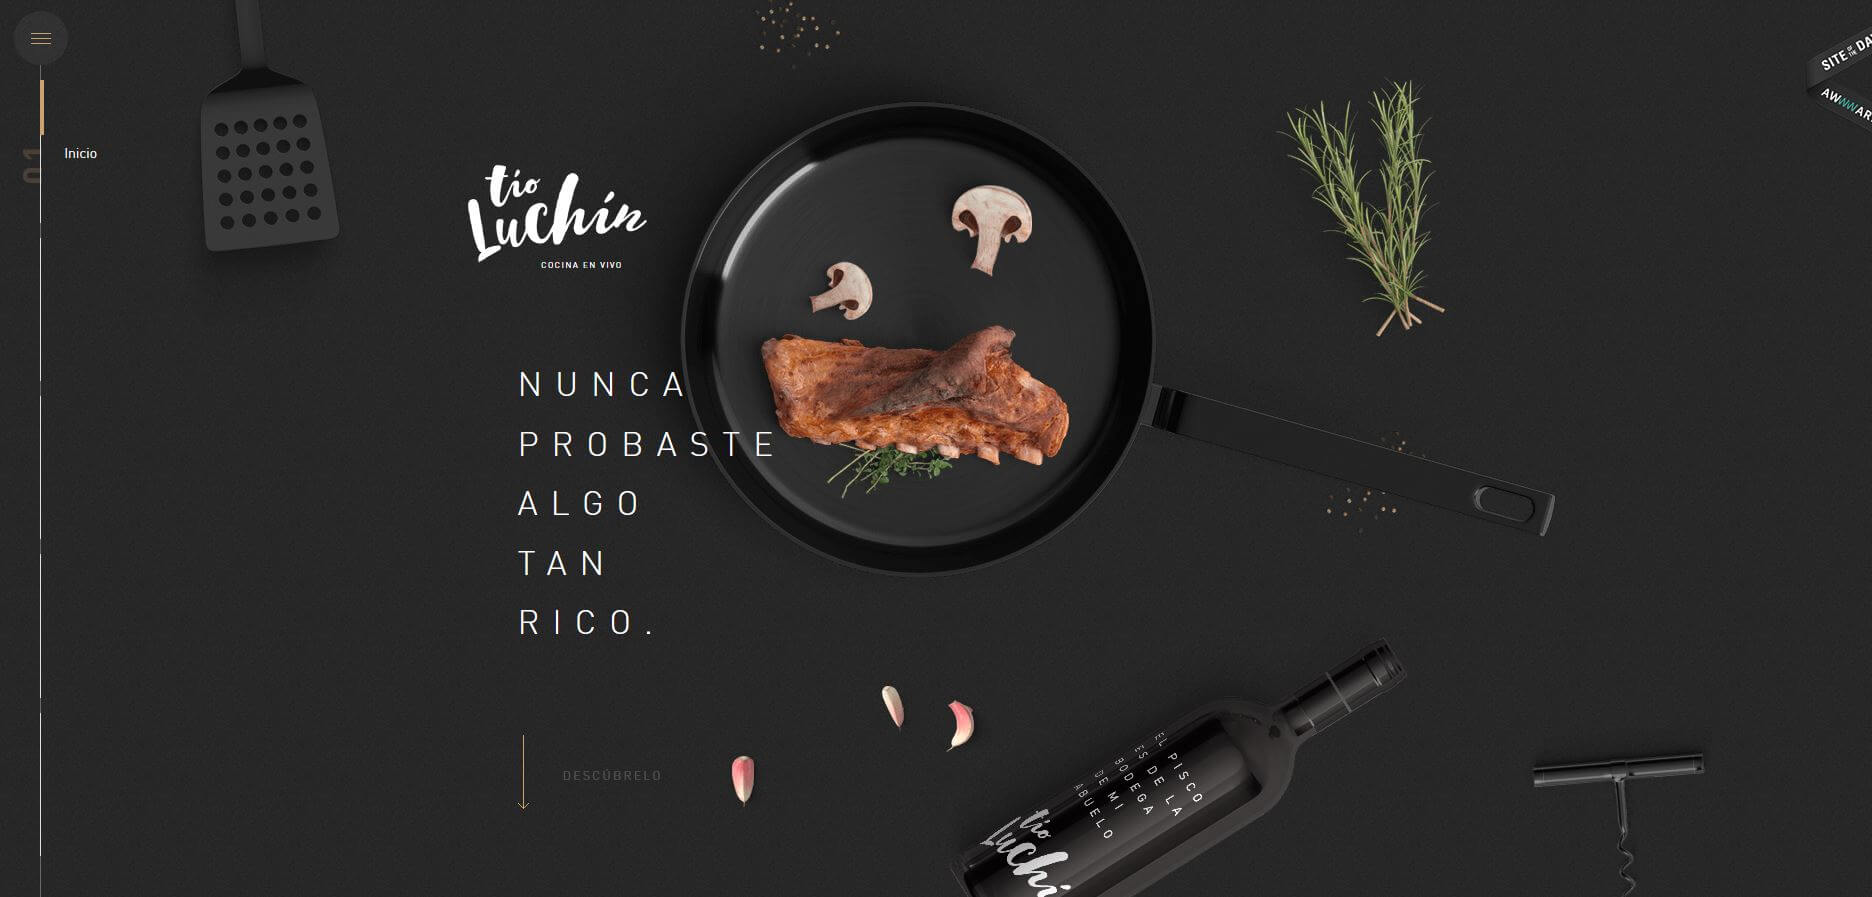 Bei Tio Luchin kredenzen uns die Webdesign Köche ein perfektes Arrangement.